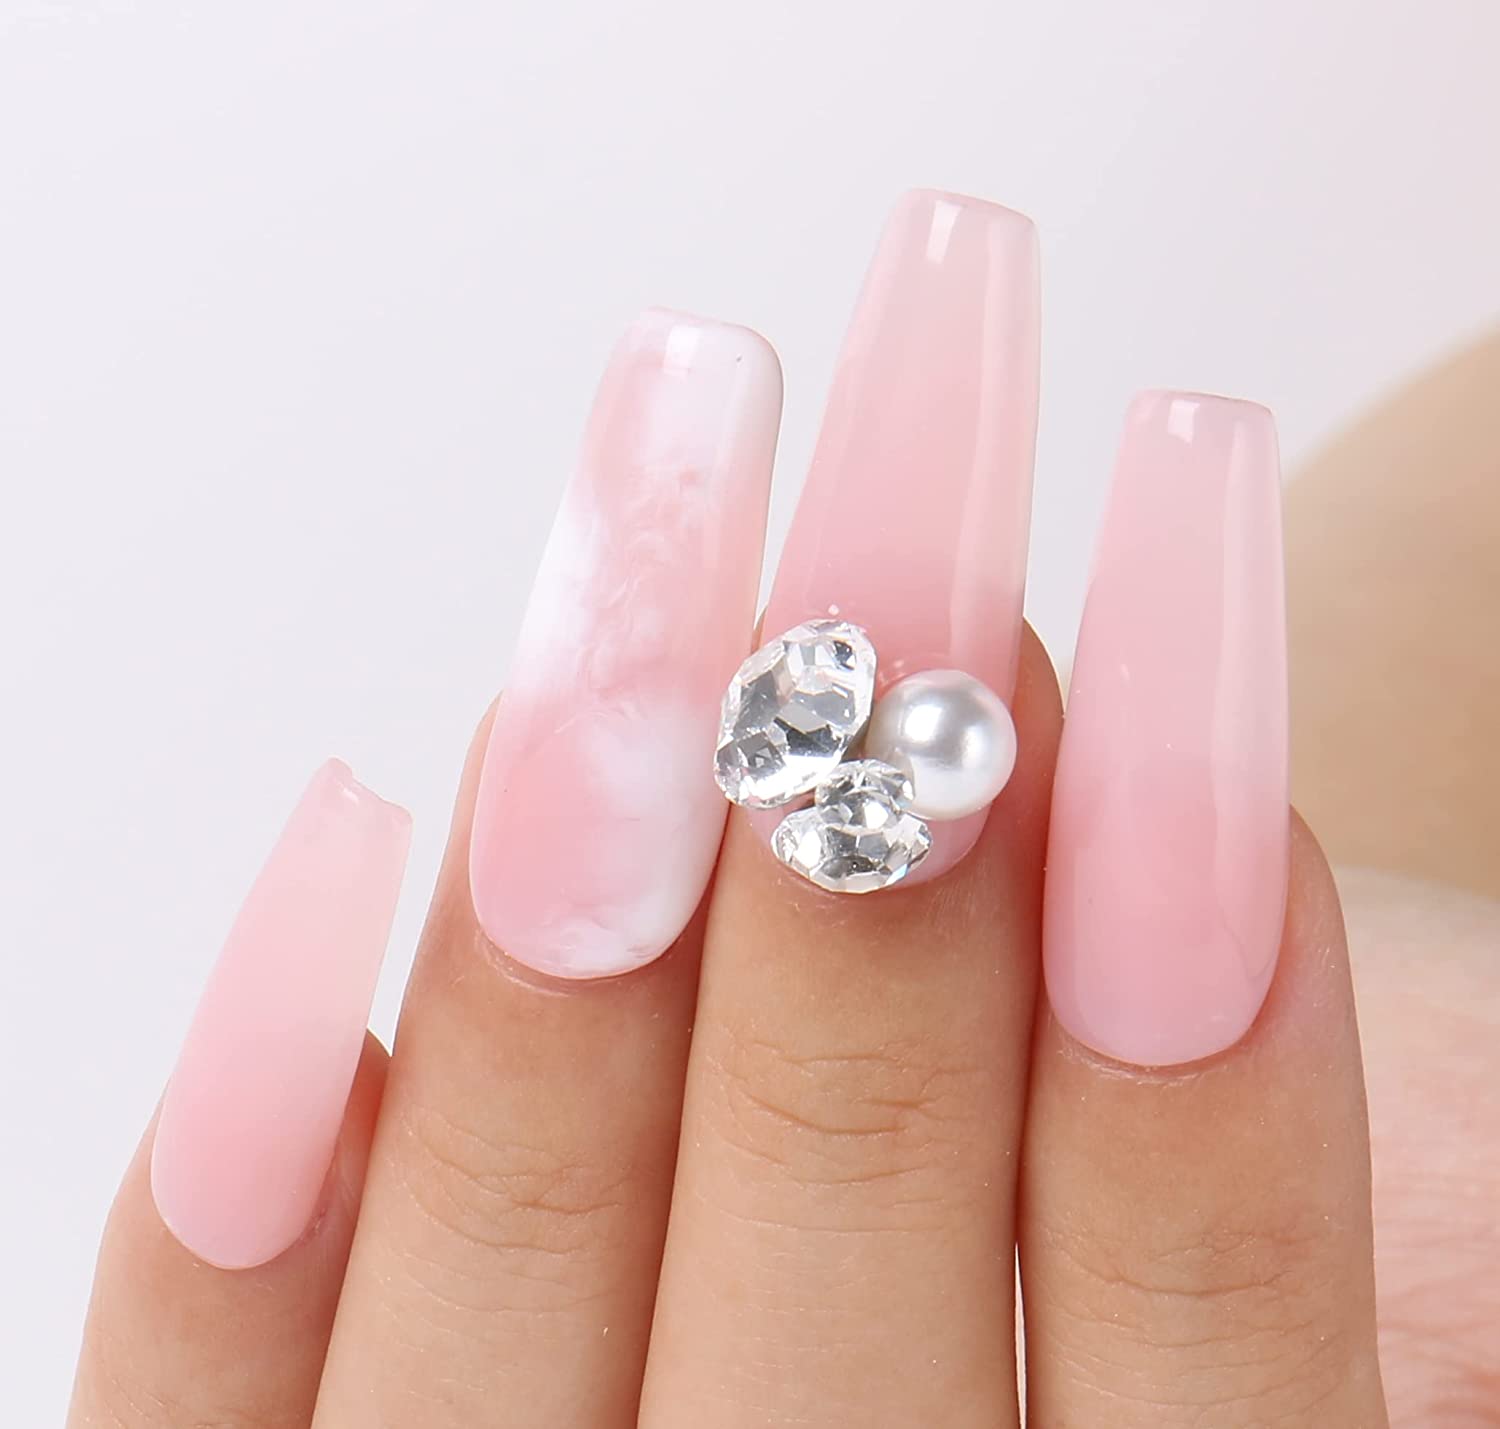 Sheer Nails | Sheer nails, Nails, Pink acrylic nails